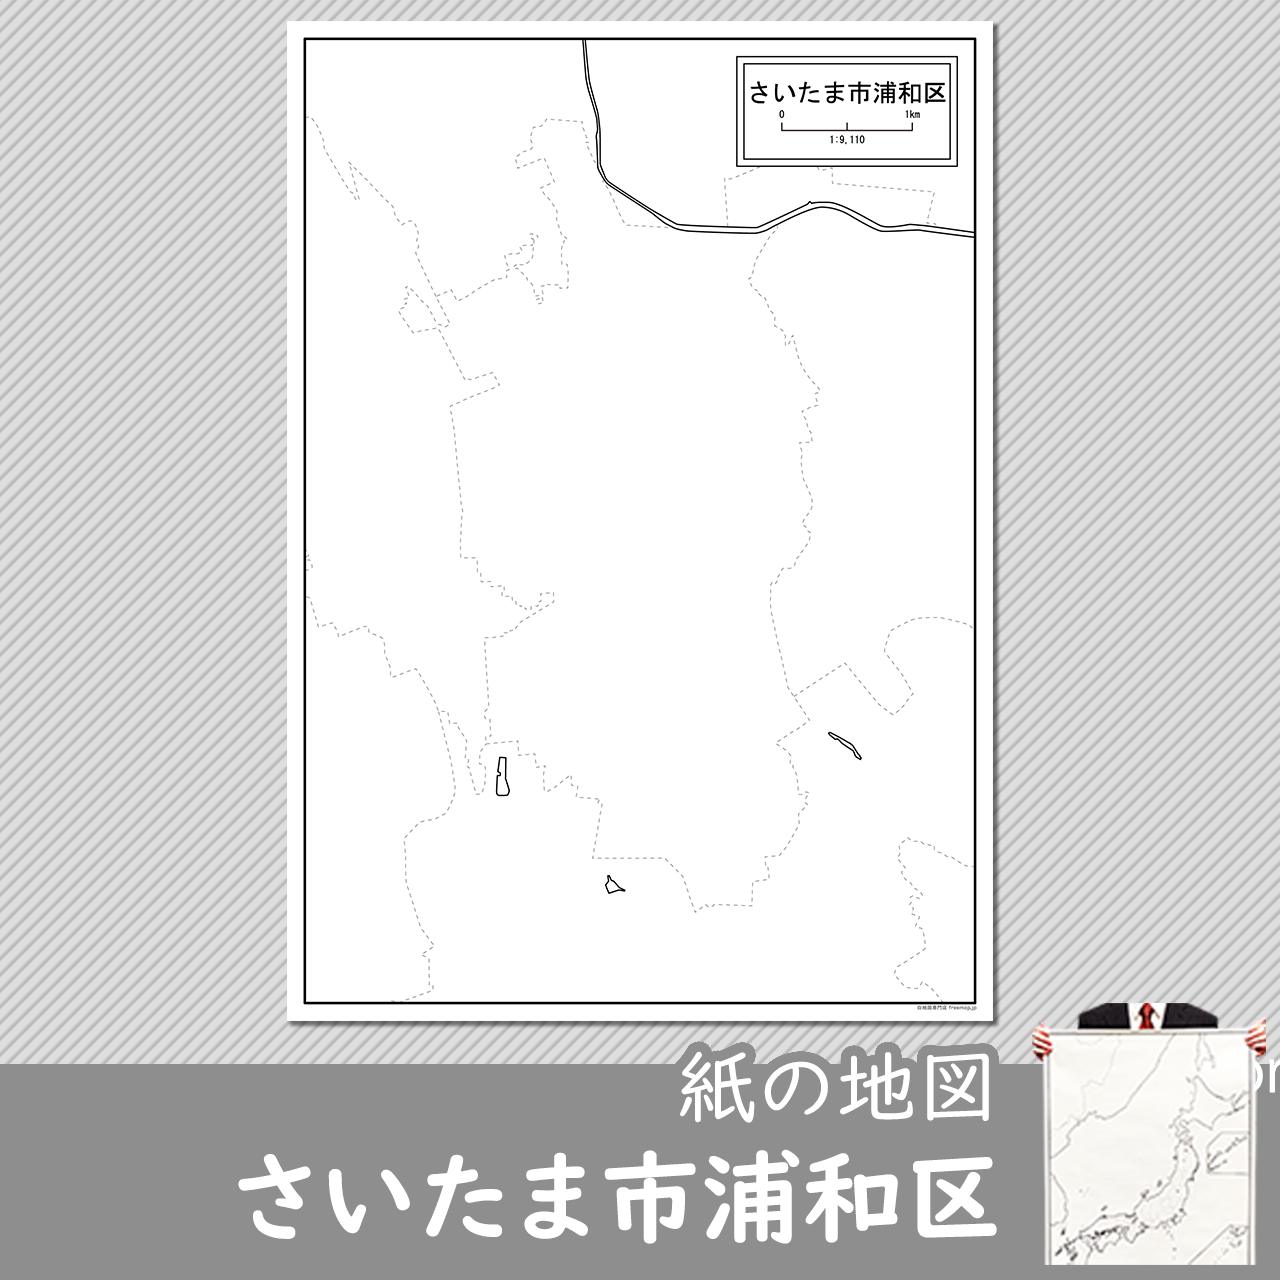 さいたま市浦和区の紙の白地図のサムネイル